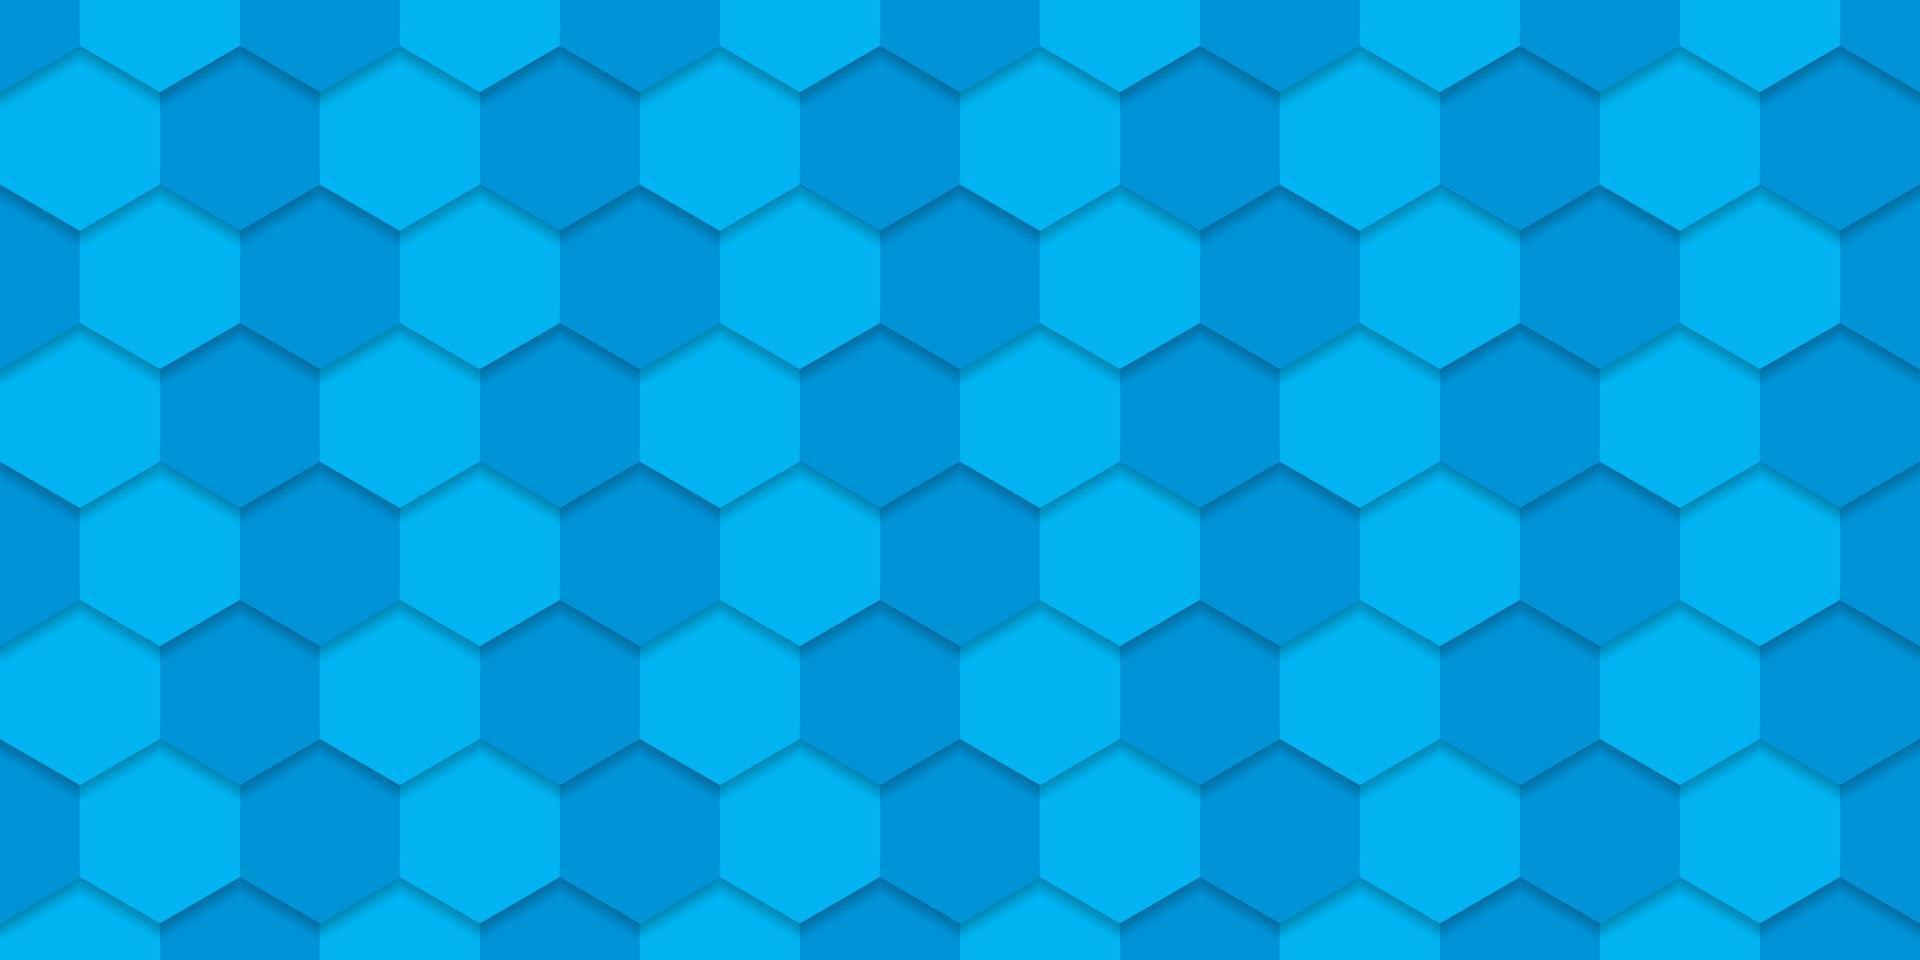 futuristisk ljusblå hexagon bakgrund. digital tom blå banner för kemi, vetenskap, teknik. abstrakt 3d sexkantigt ljusblått mönster. modern tapetdesign. vektor illustration.